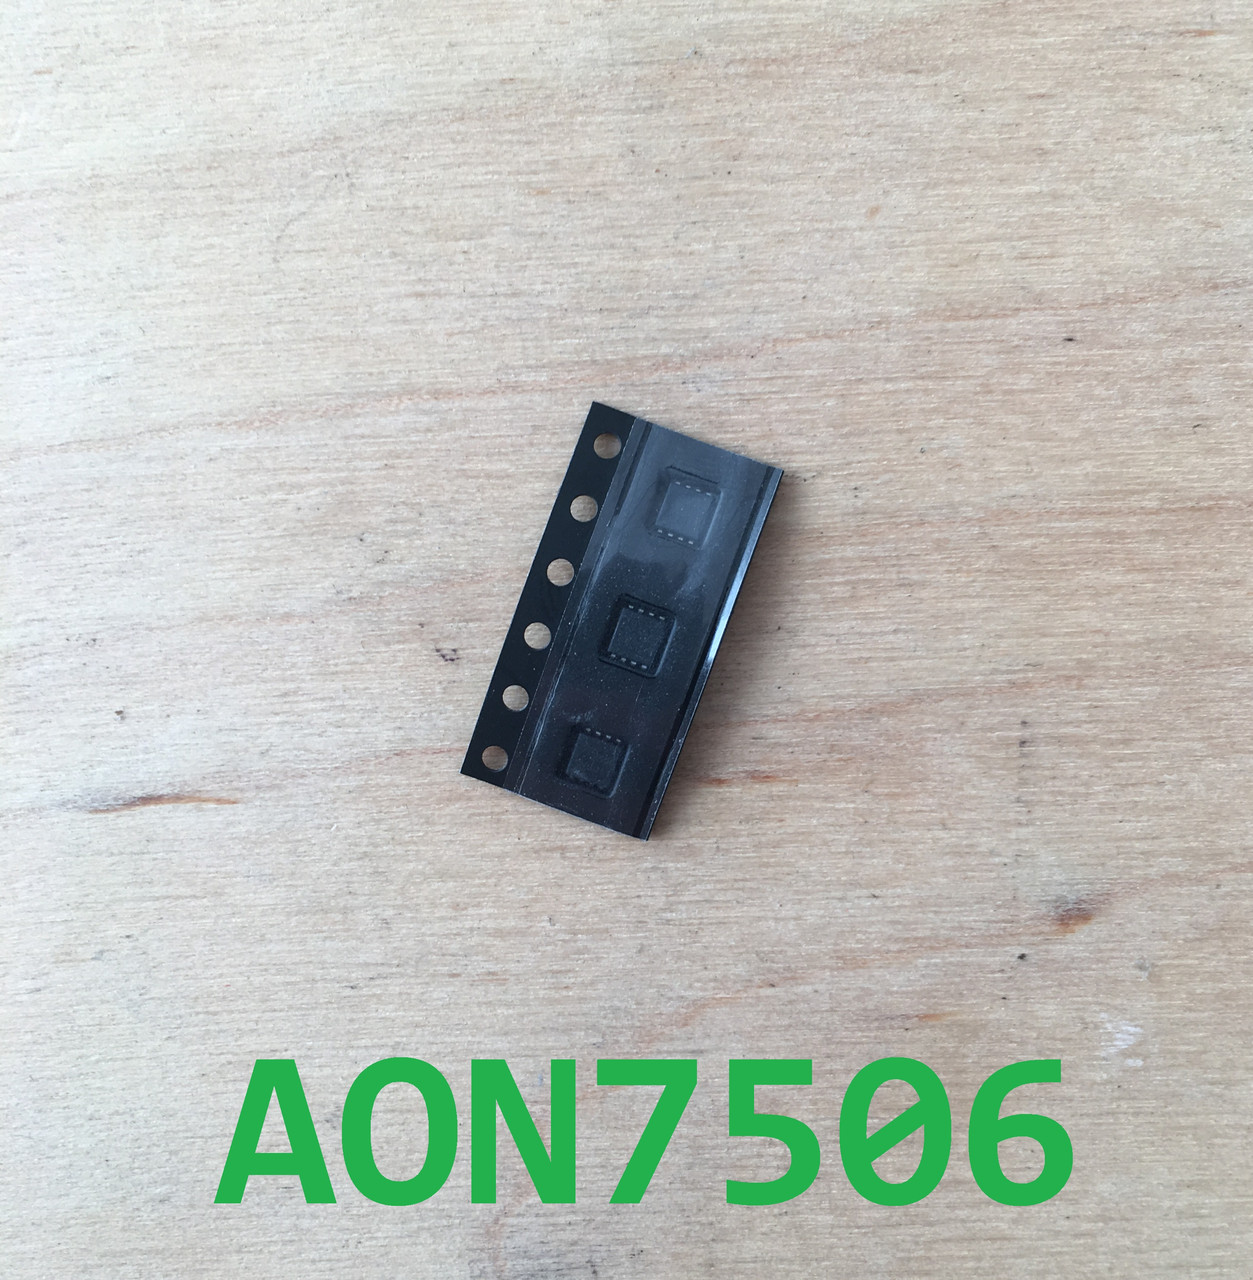 Микросхема AON7506 / 7506 — в Категории "Микросхемы" на Bigl.ua ...